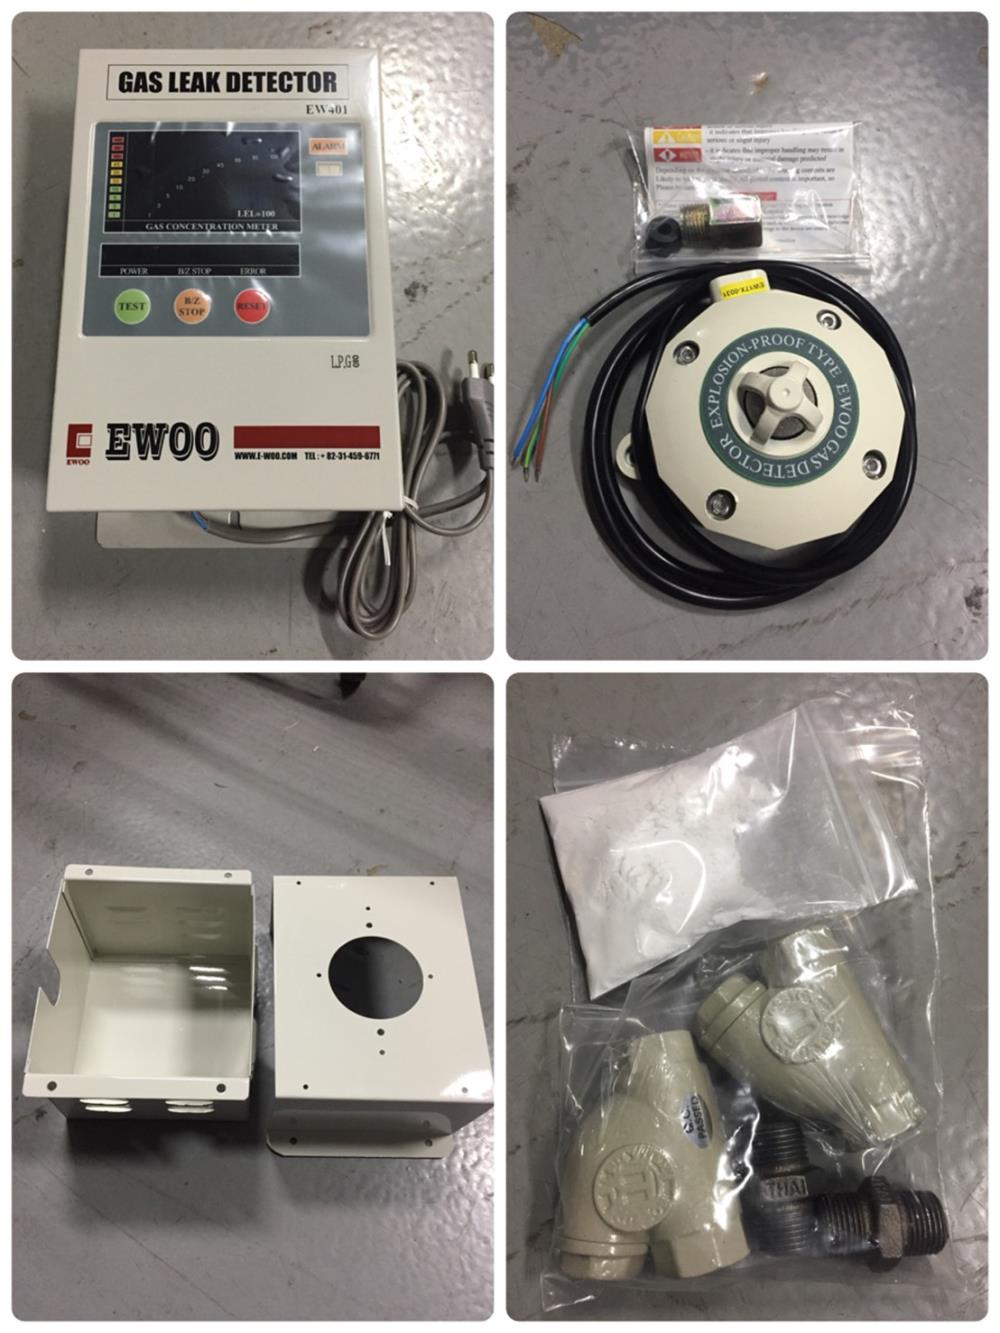 เครื่องตรวจจับแก๊สรั่ว EWOO รุ่น EW401,gas detector ,เครื่องตรวจจับแก๊สรั่ว , Ewooo , EW401,Ewoo,Plant and Facility Equipment/Safety Equipment/Safety Equipment & Accessories